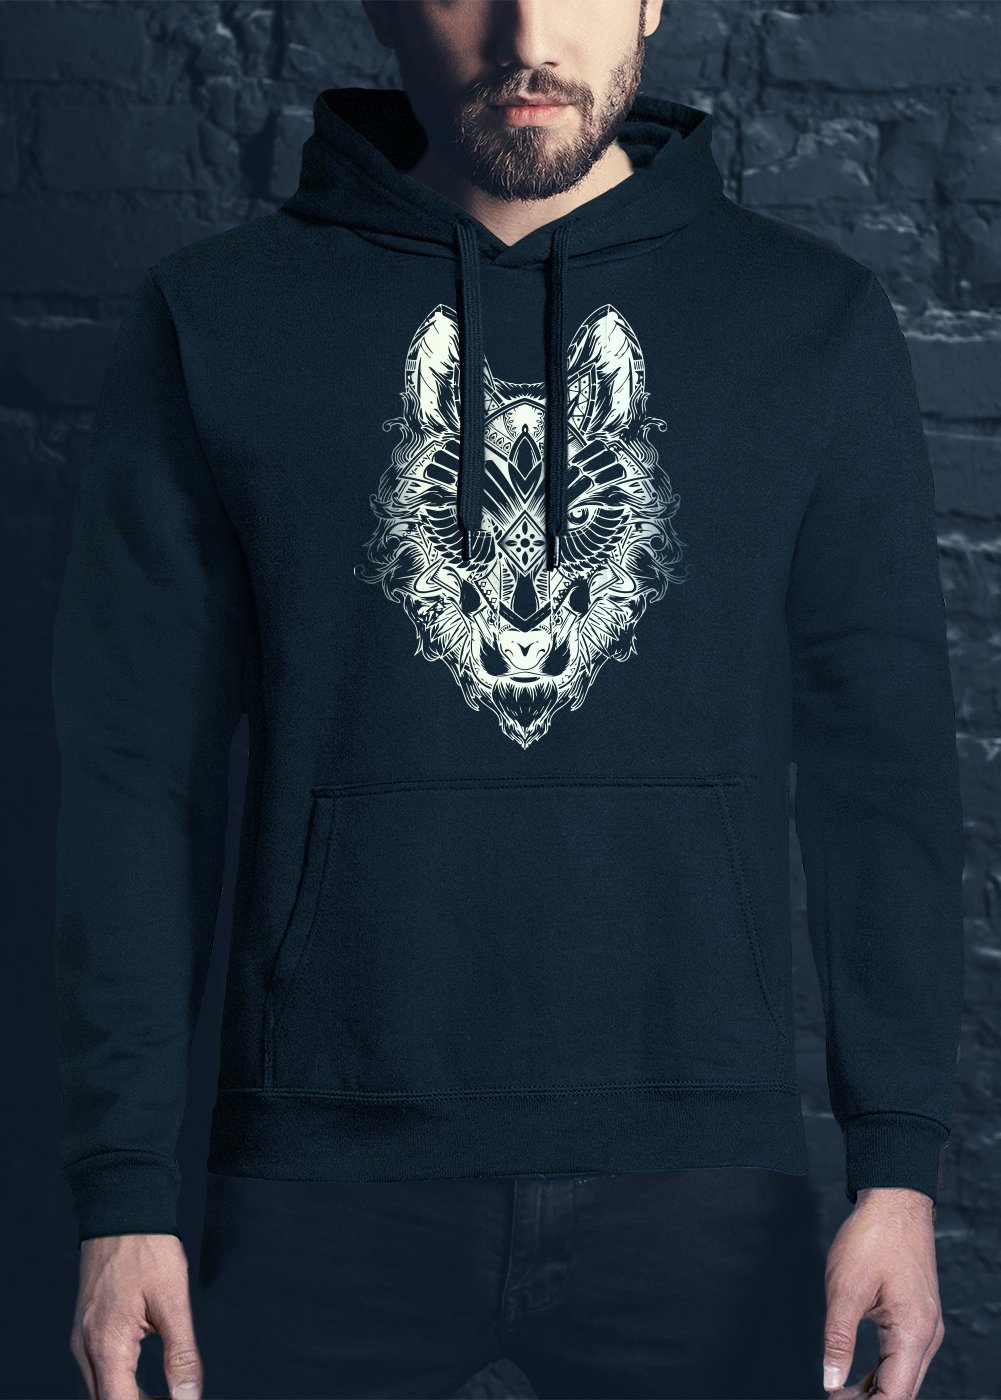 Underworld Wolf hoodie glows in the dark